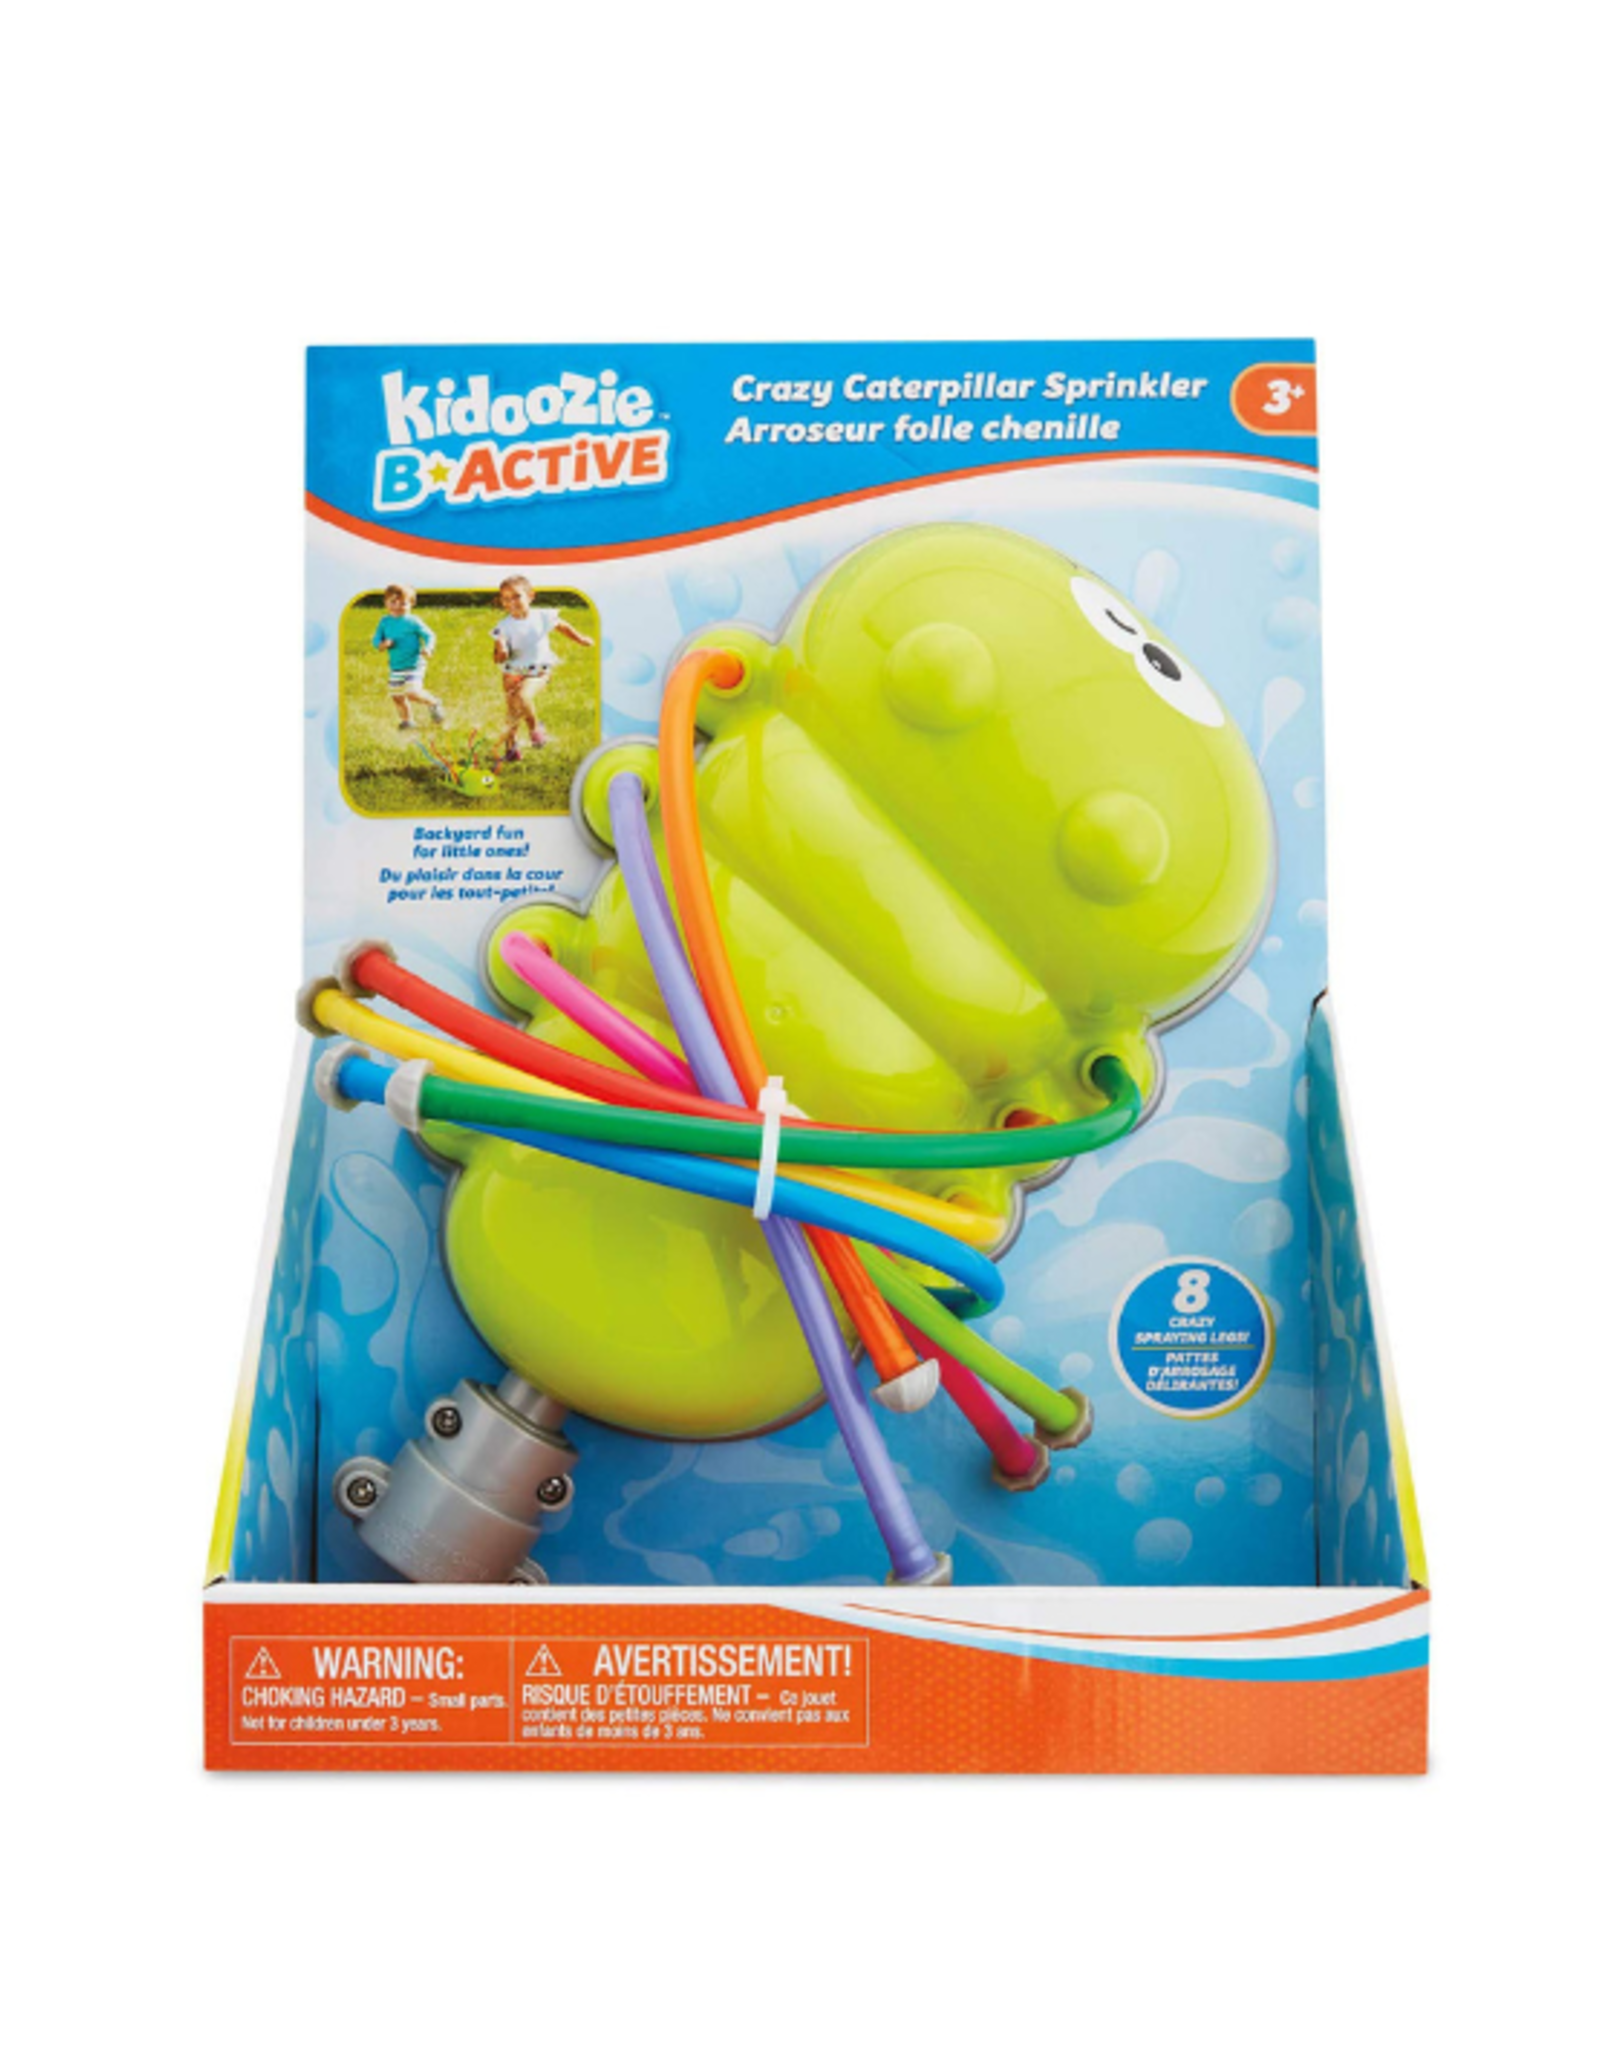 Kidoozie Kidoozie - Crazy Caterpillar Sprinkler